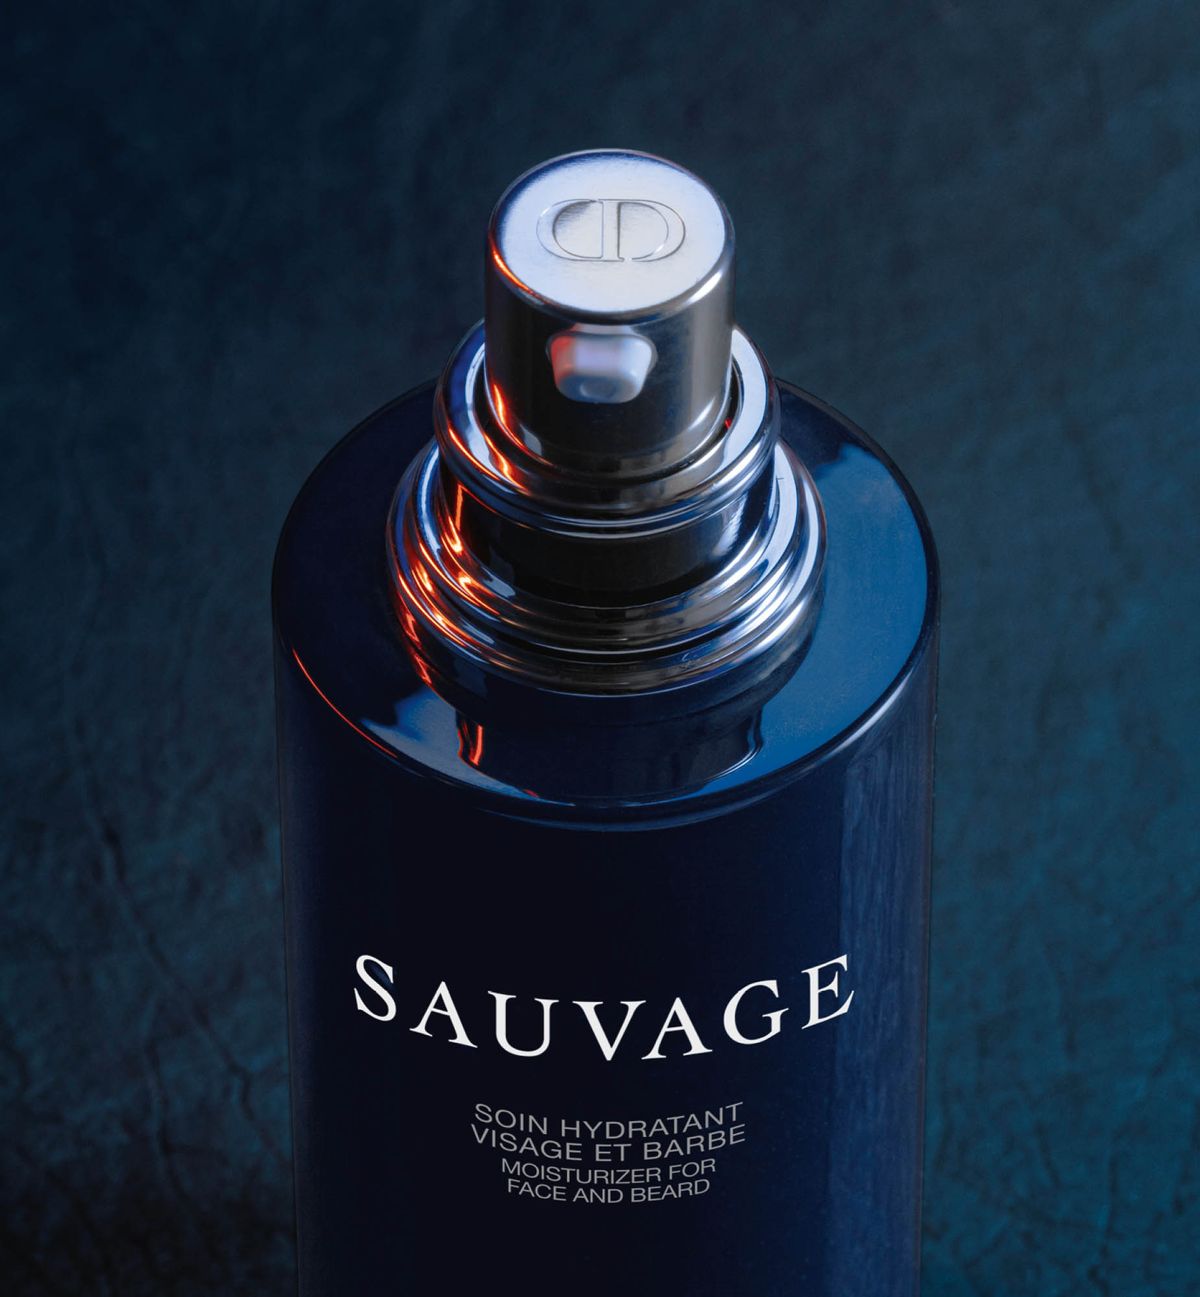 Sauvage-Tratamiento-Hidratante-Para-Rostro-y-Barba-05.jpg